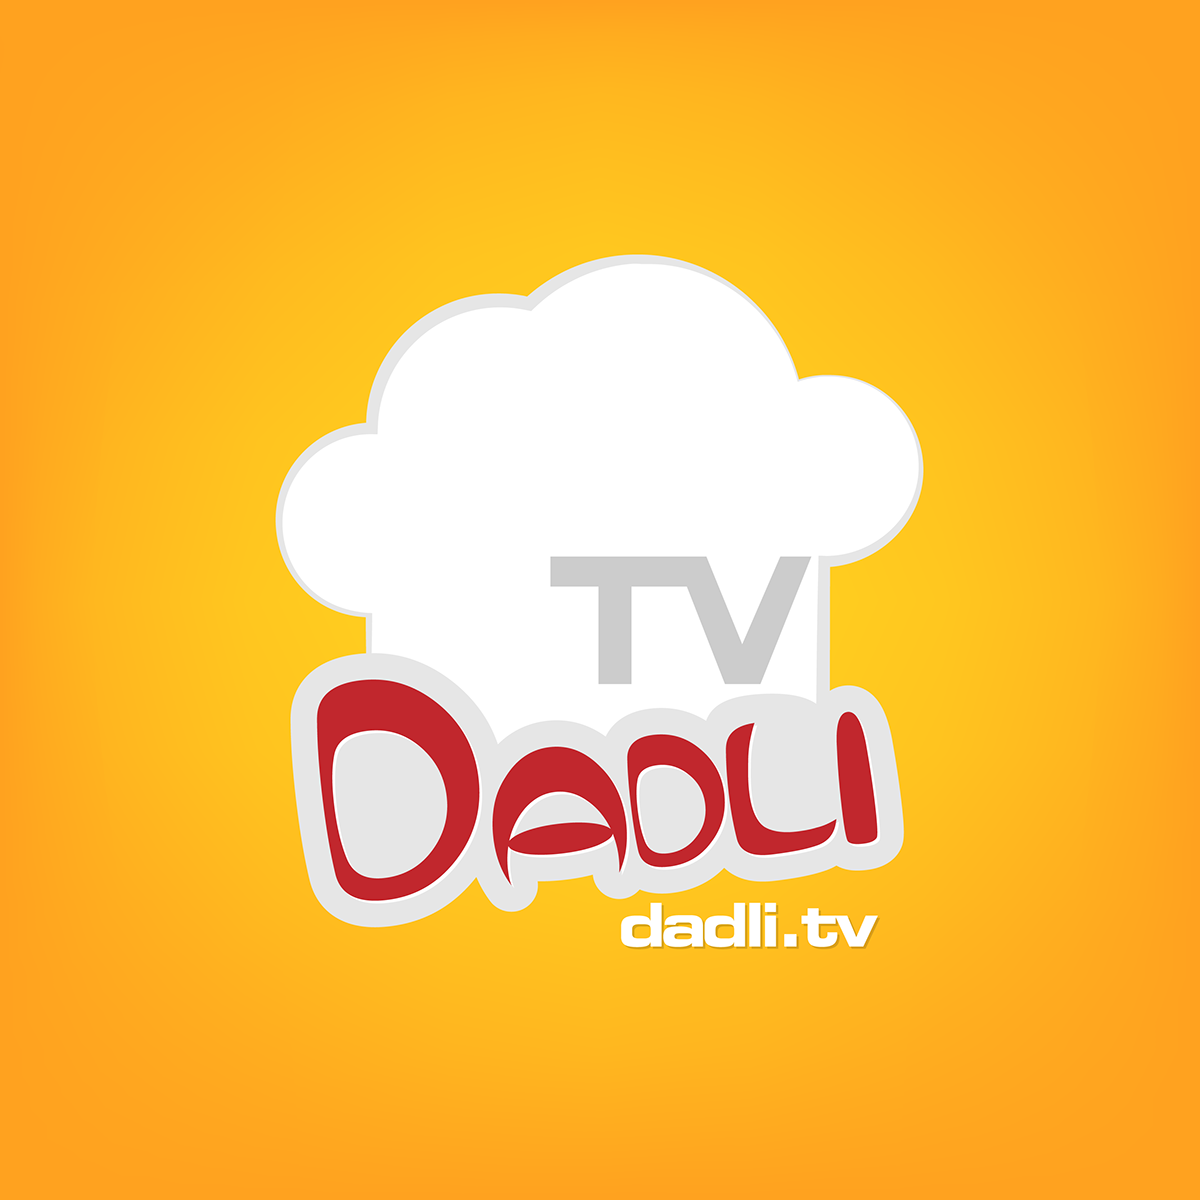 Dadli.tv